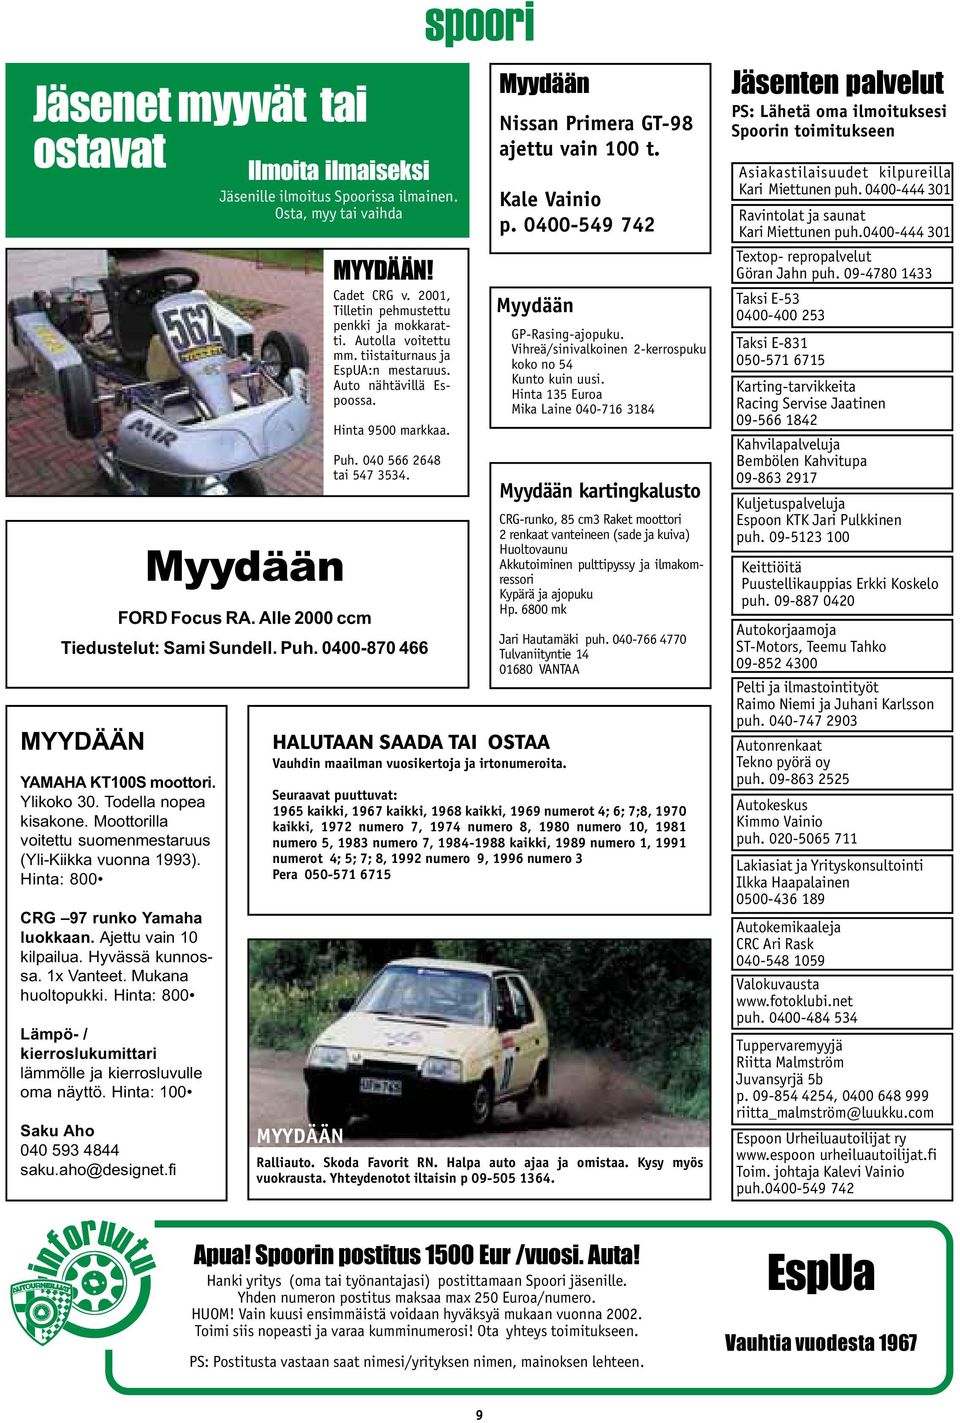 Ylikoko 30. Todella nopea kisakone. Moottorilla voitettu suomenmestaruus (Yli-Kiikka vuonna 1993). Hinta: 800 CRG 97 runko Yamaha luokkaan. Ajettu vain 10 kilpailua. Hyvässä kunnossa. 1x Vanteet.